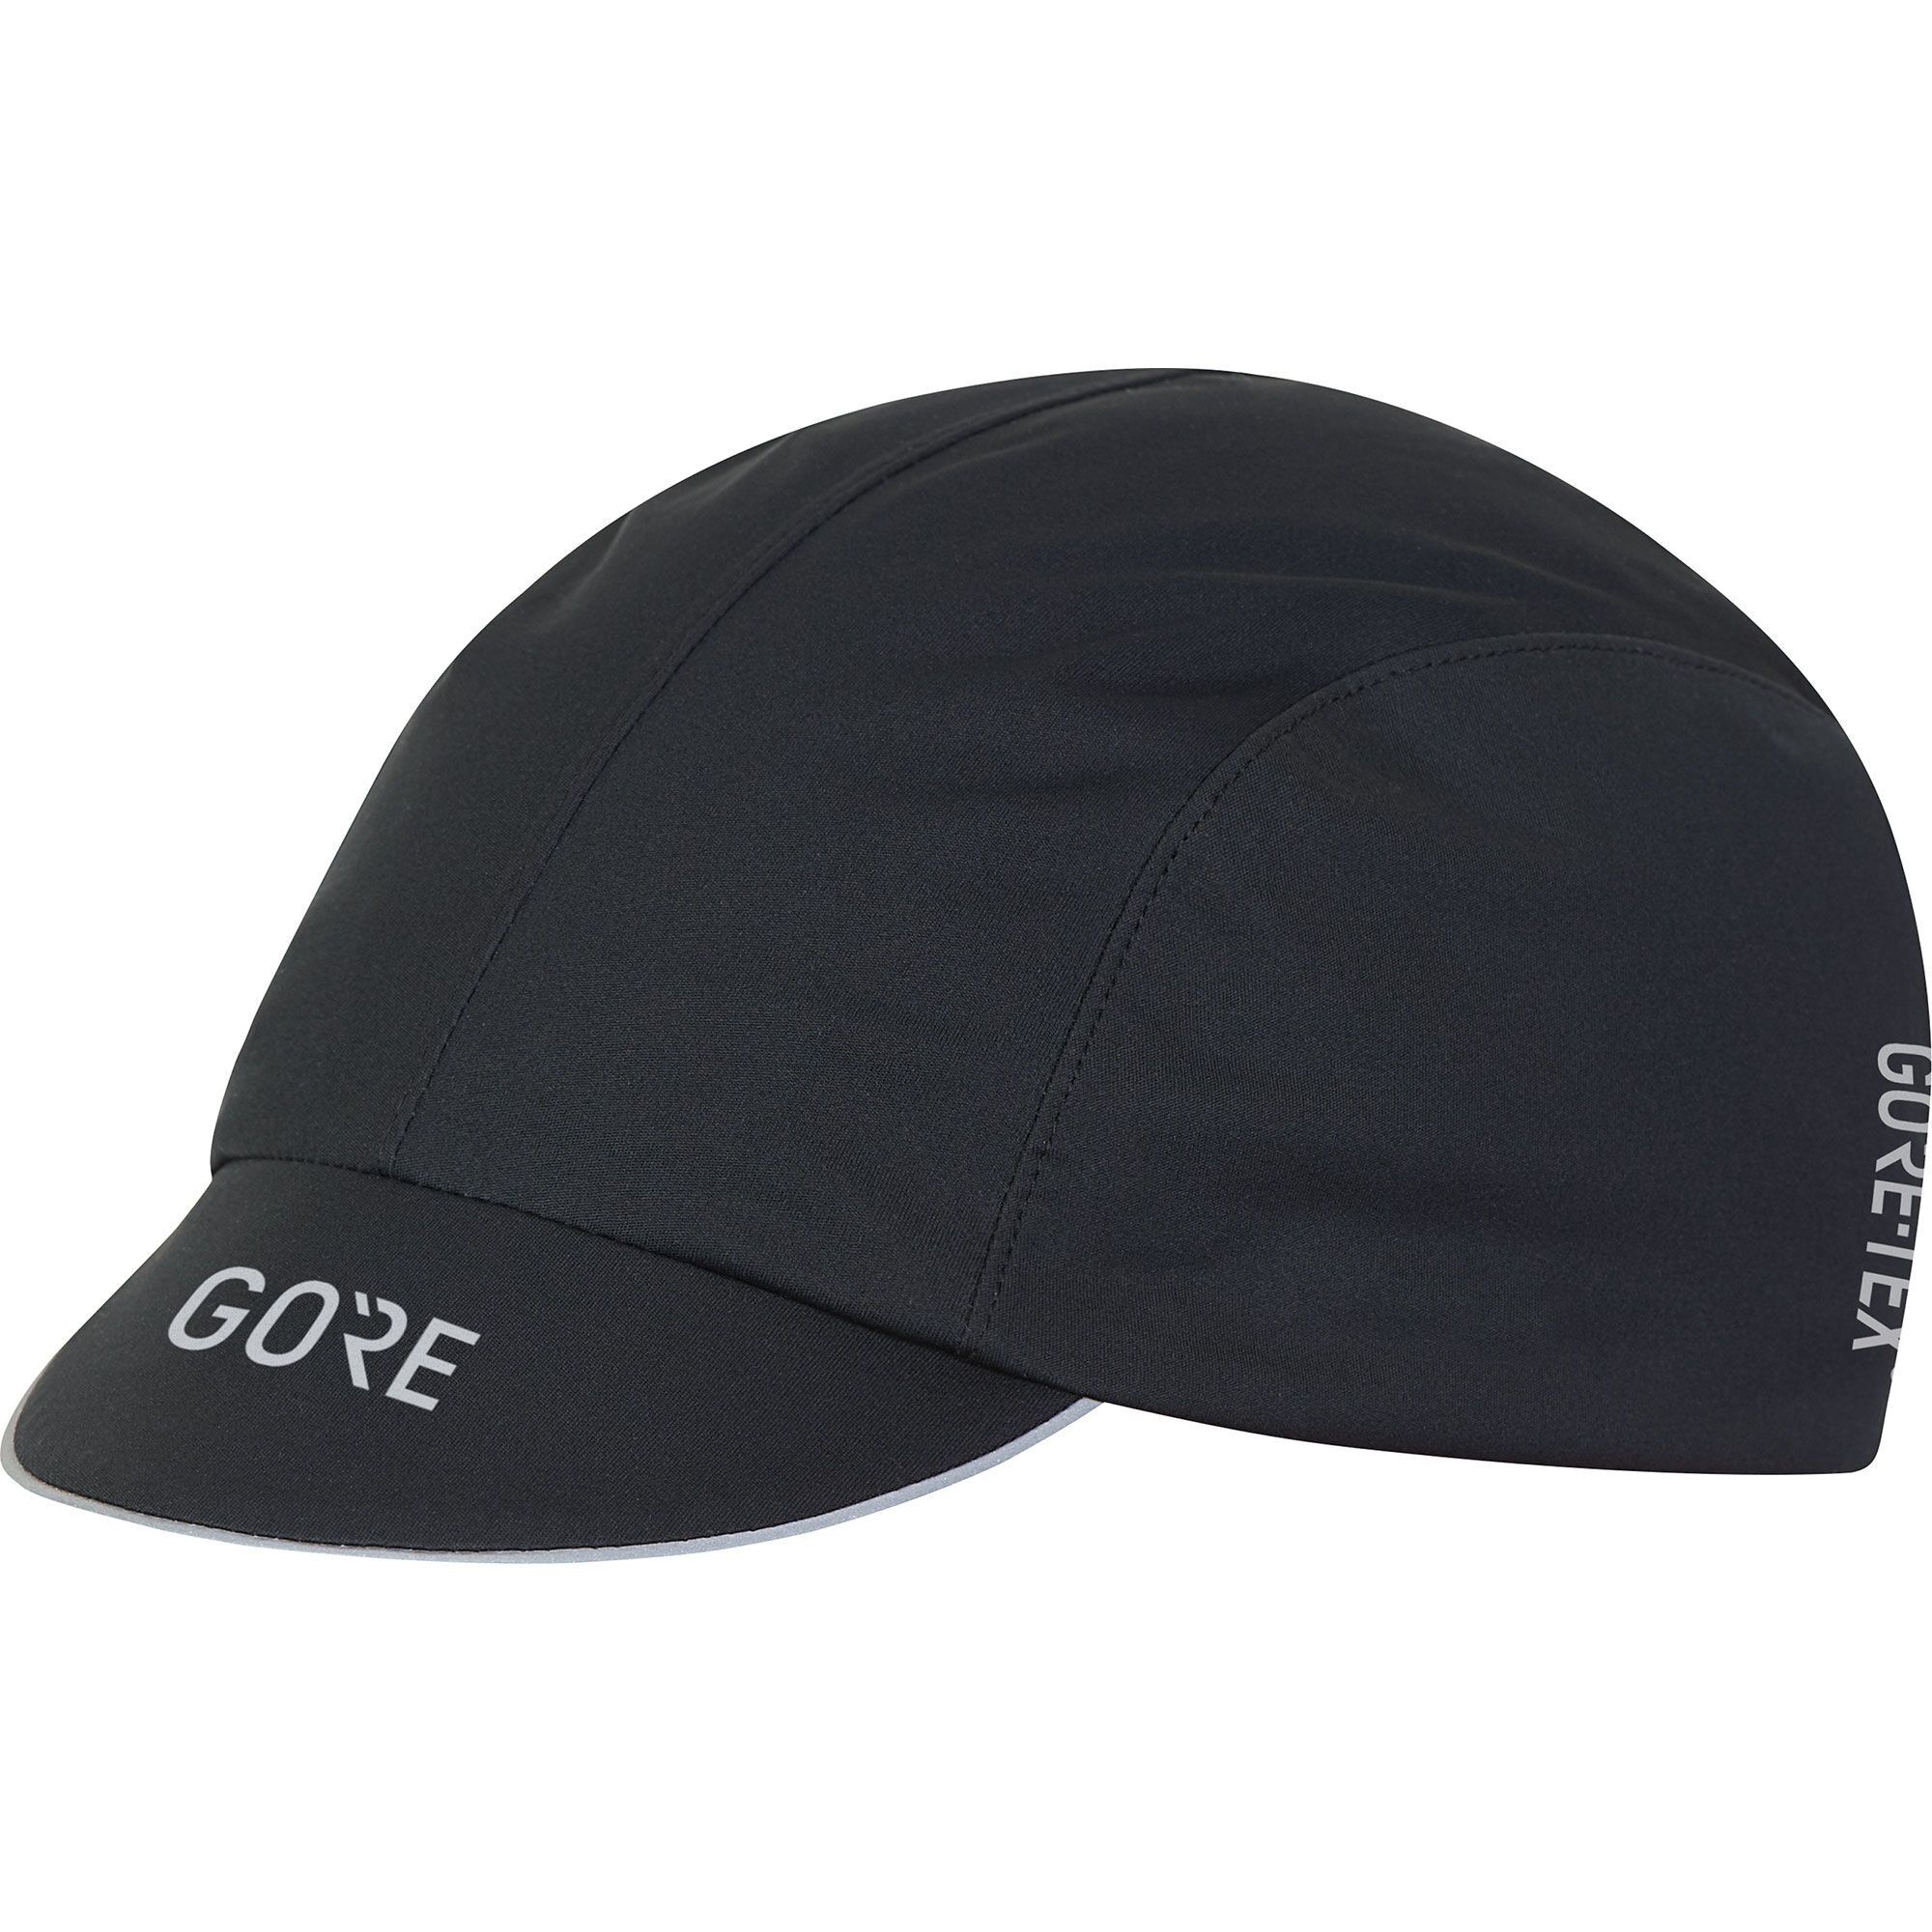 Gore Wear C7 GTX Cap - Cycling cap